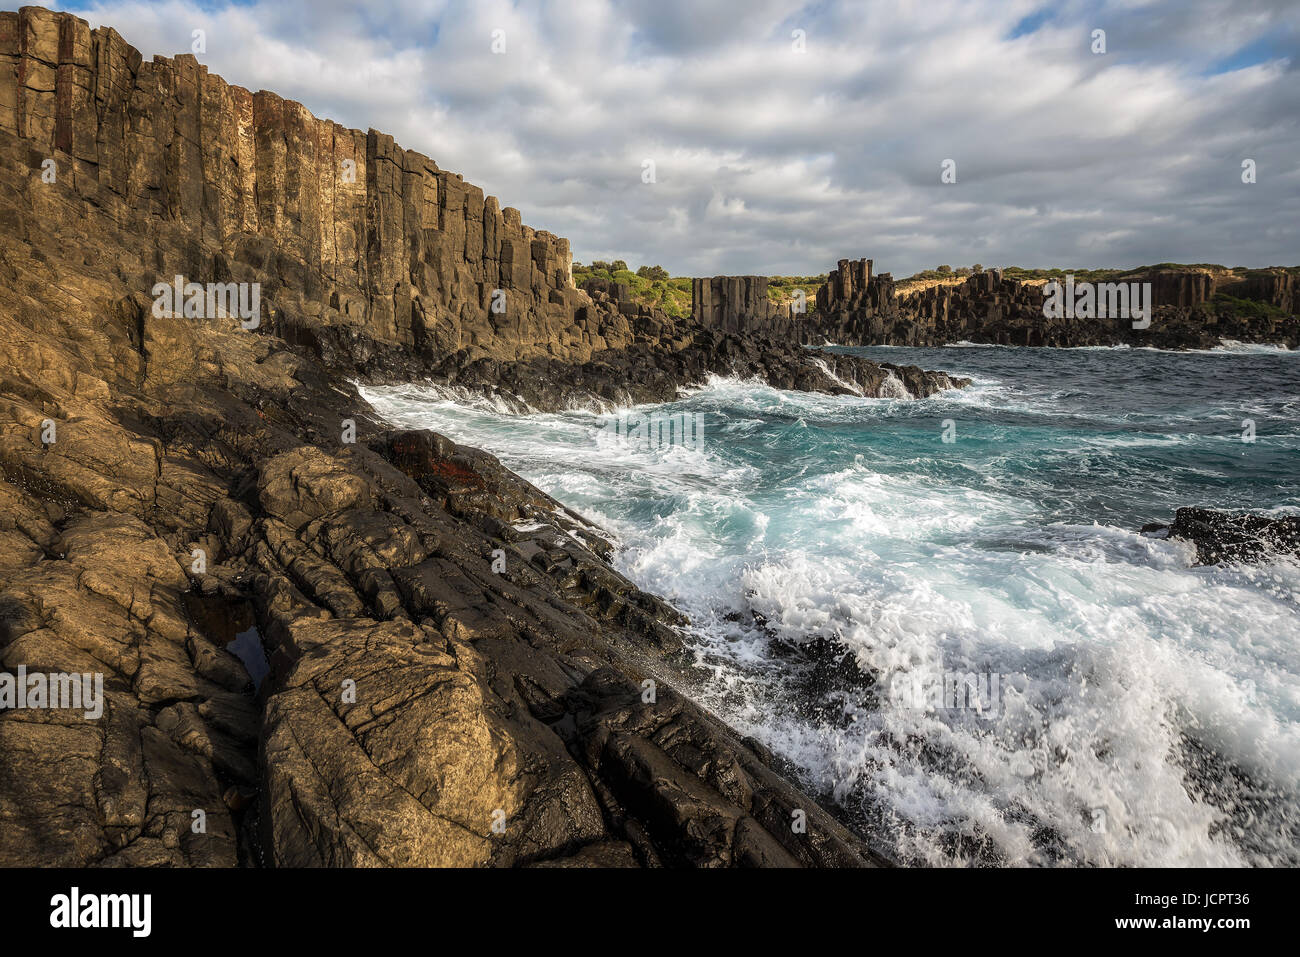 Bombo Headland Quarry. It is a coastal rock formations at kiama, Australia. Stock Photo